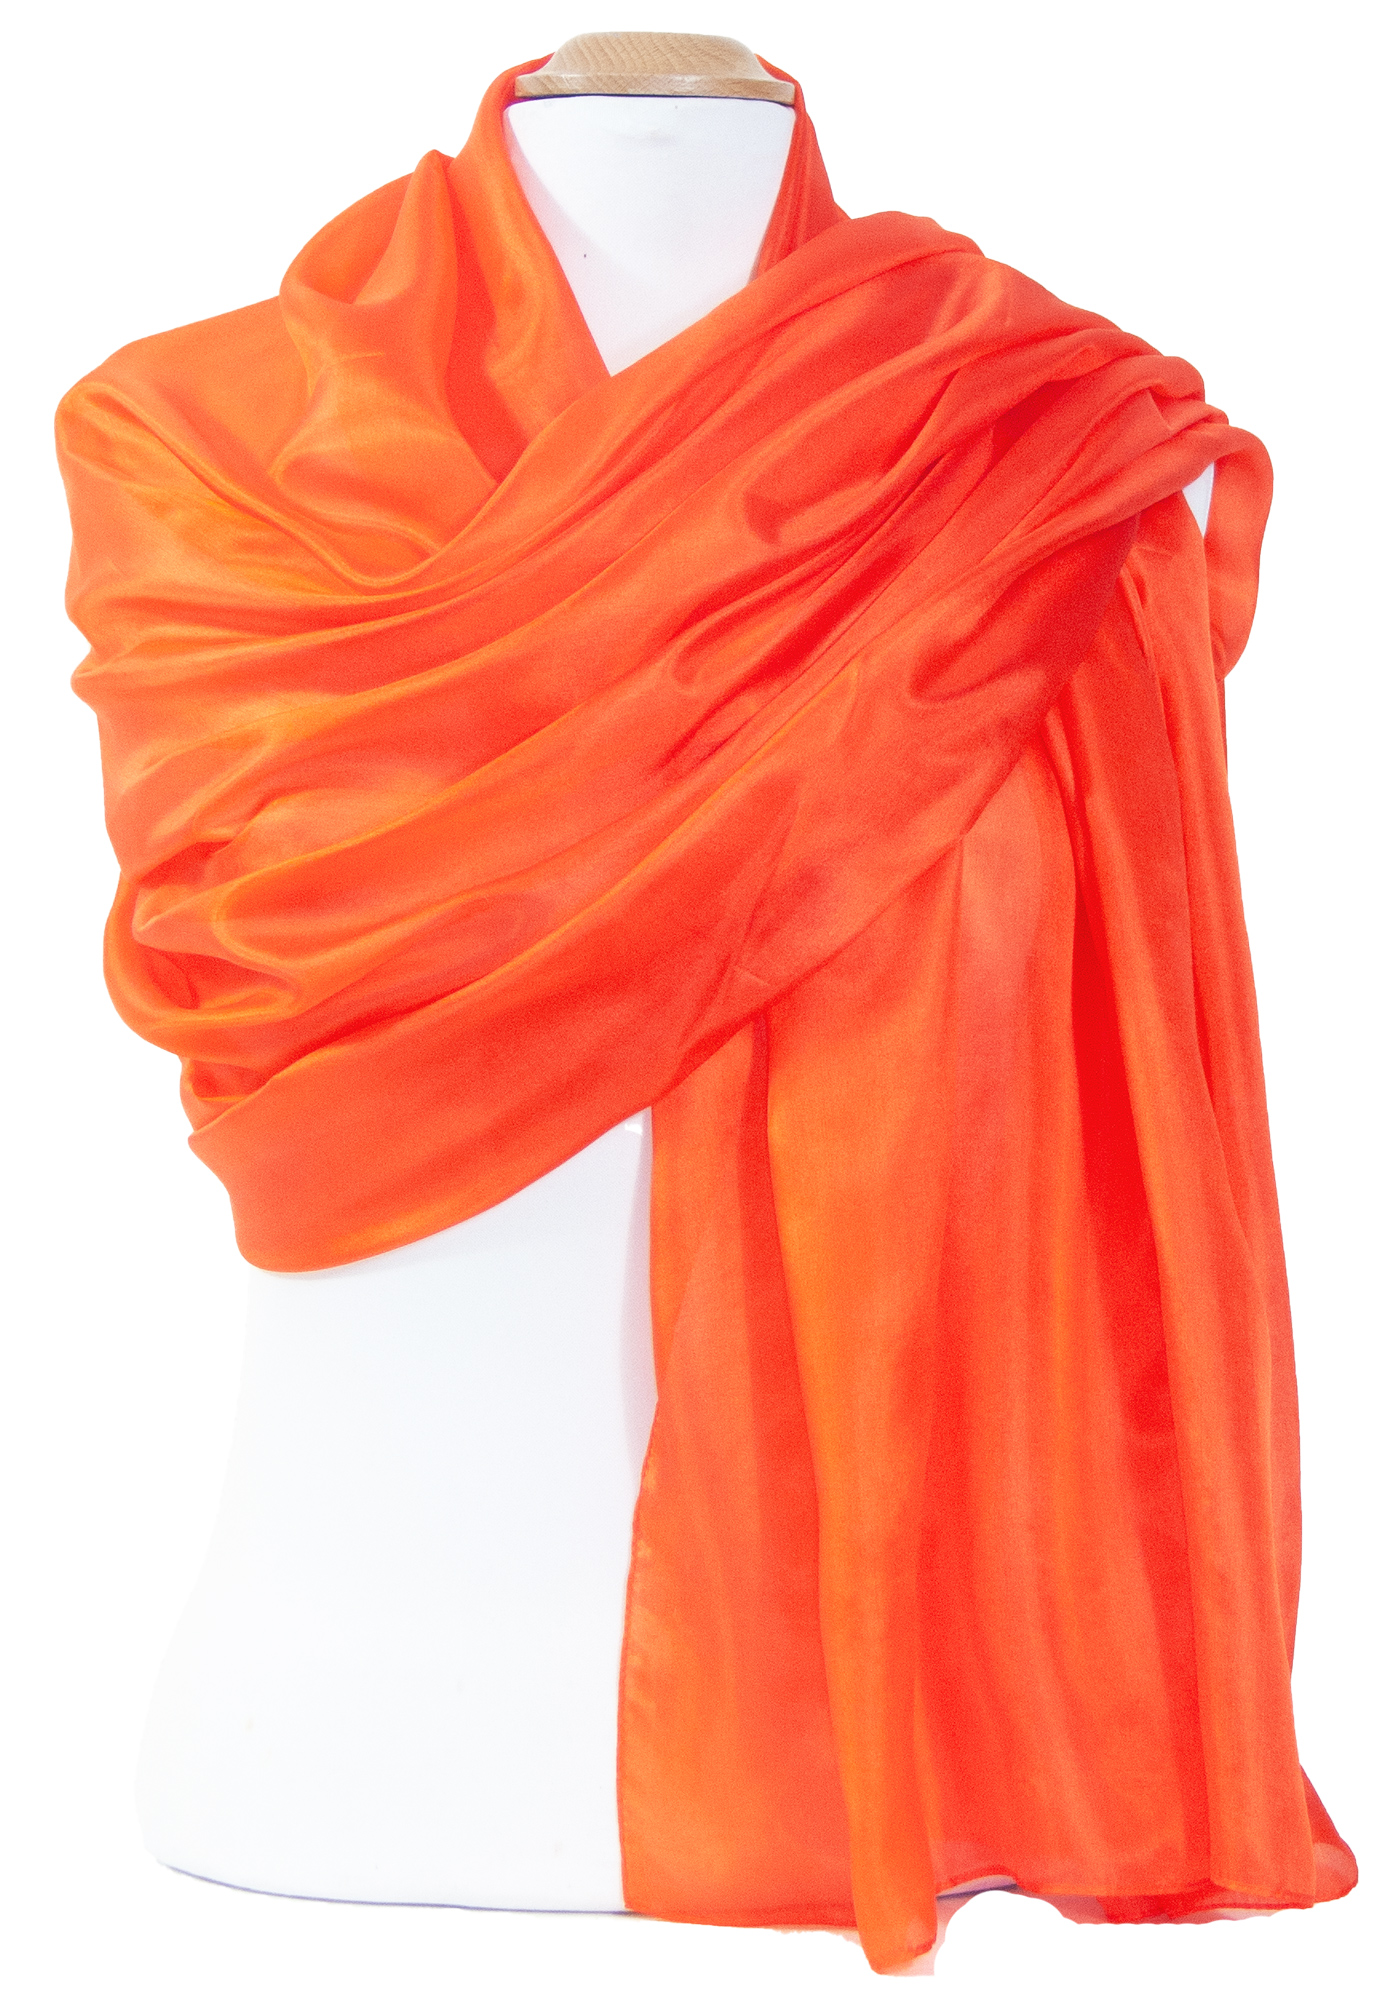 Etole femme en soie orange